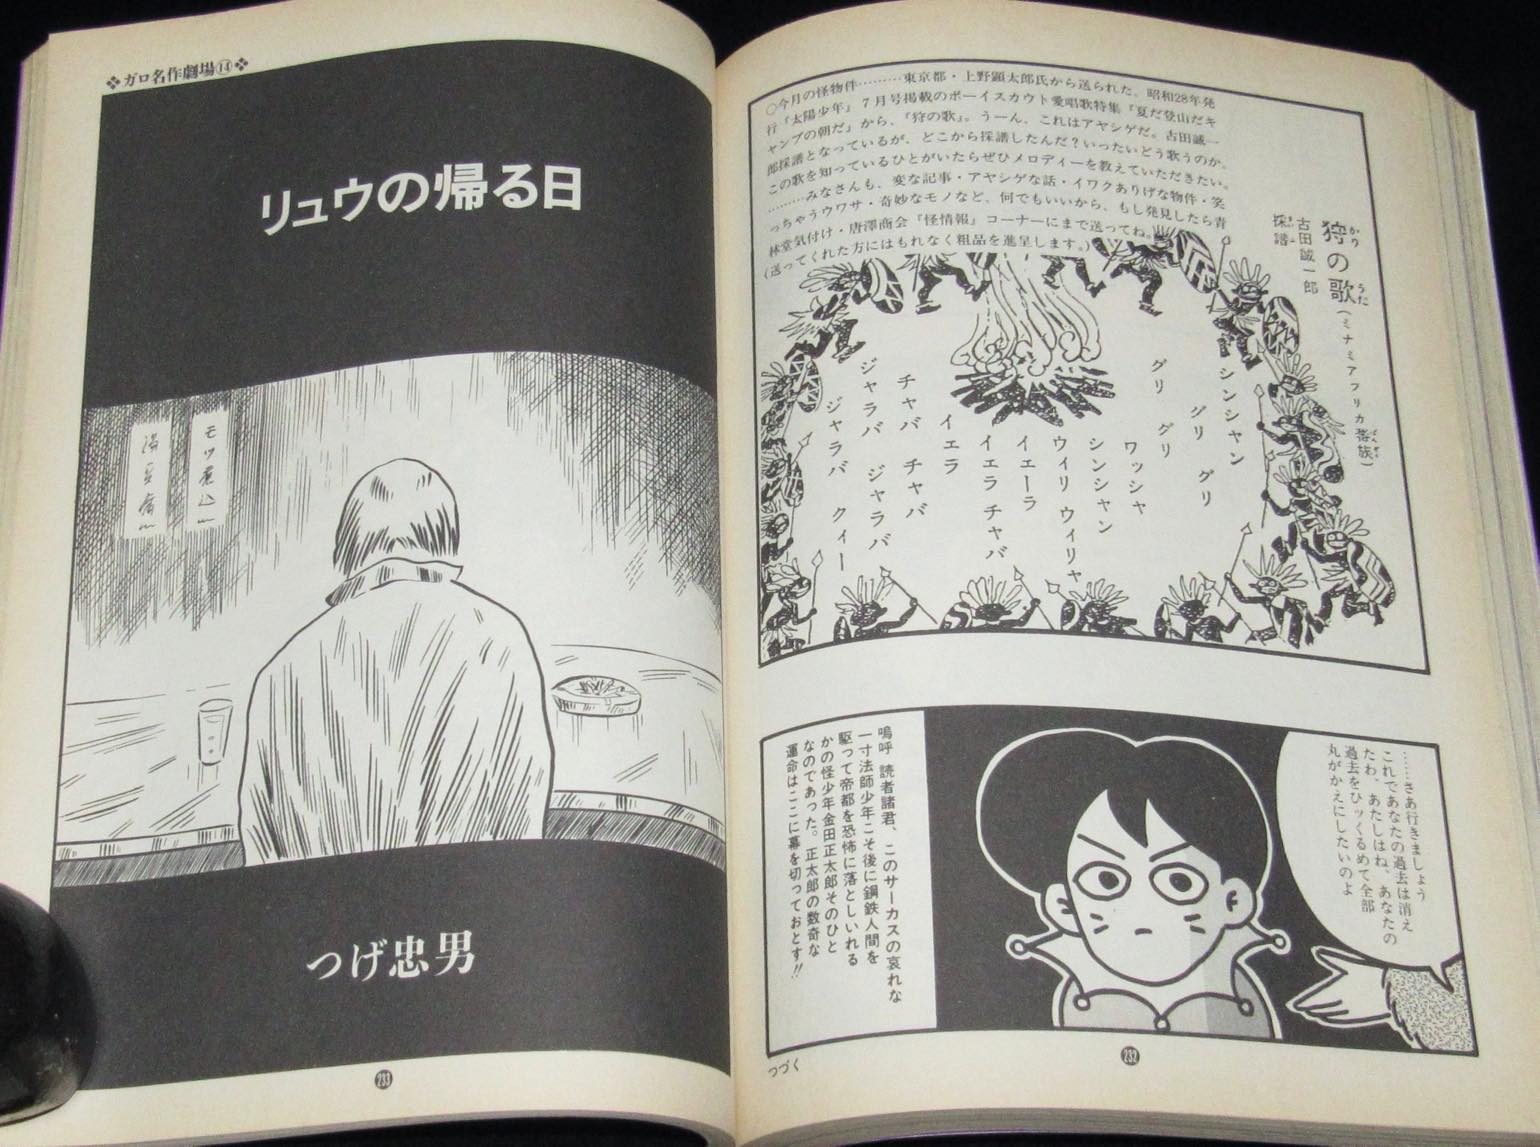 月刊漫画ガロ 1993年4月号 蛭子能収特集 花輪和一 近藤ようこ つげ忠男 絶版漫画専門 じゃんくまうす